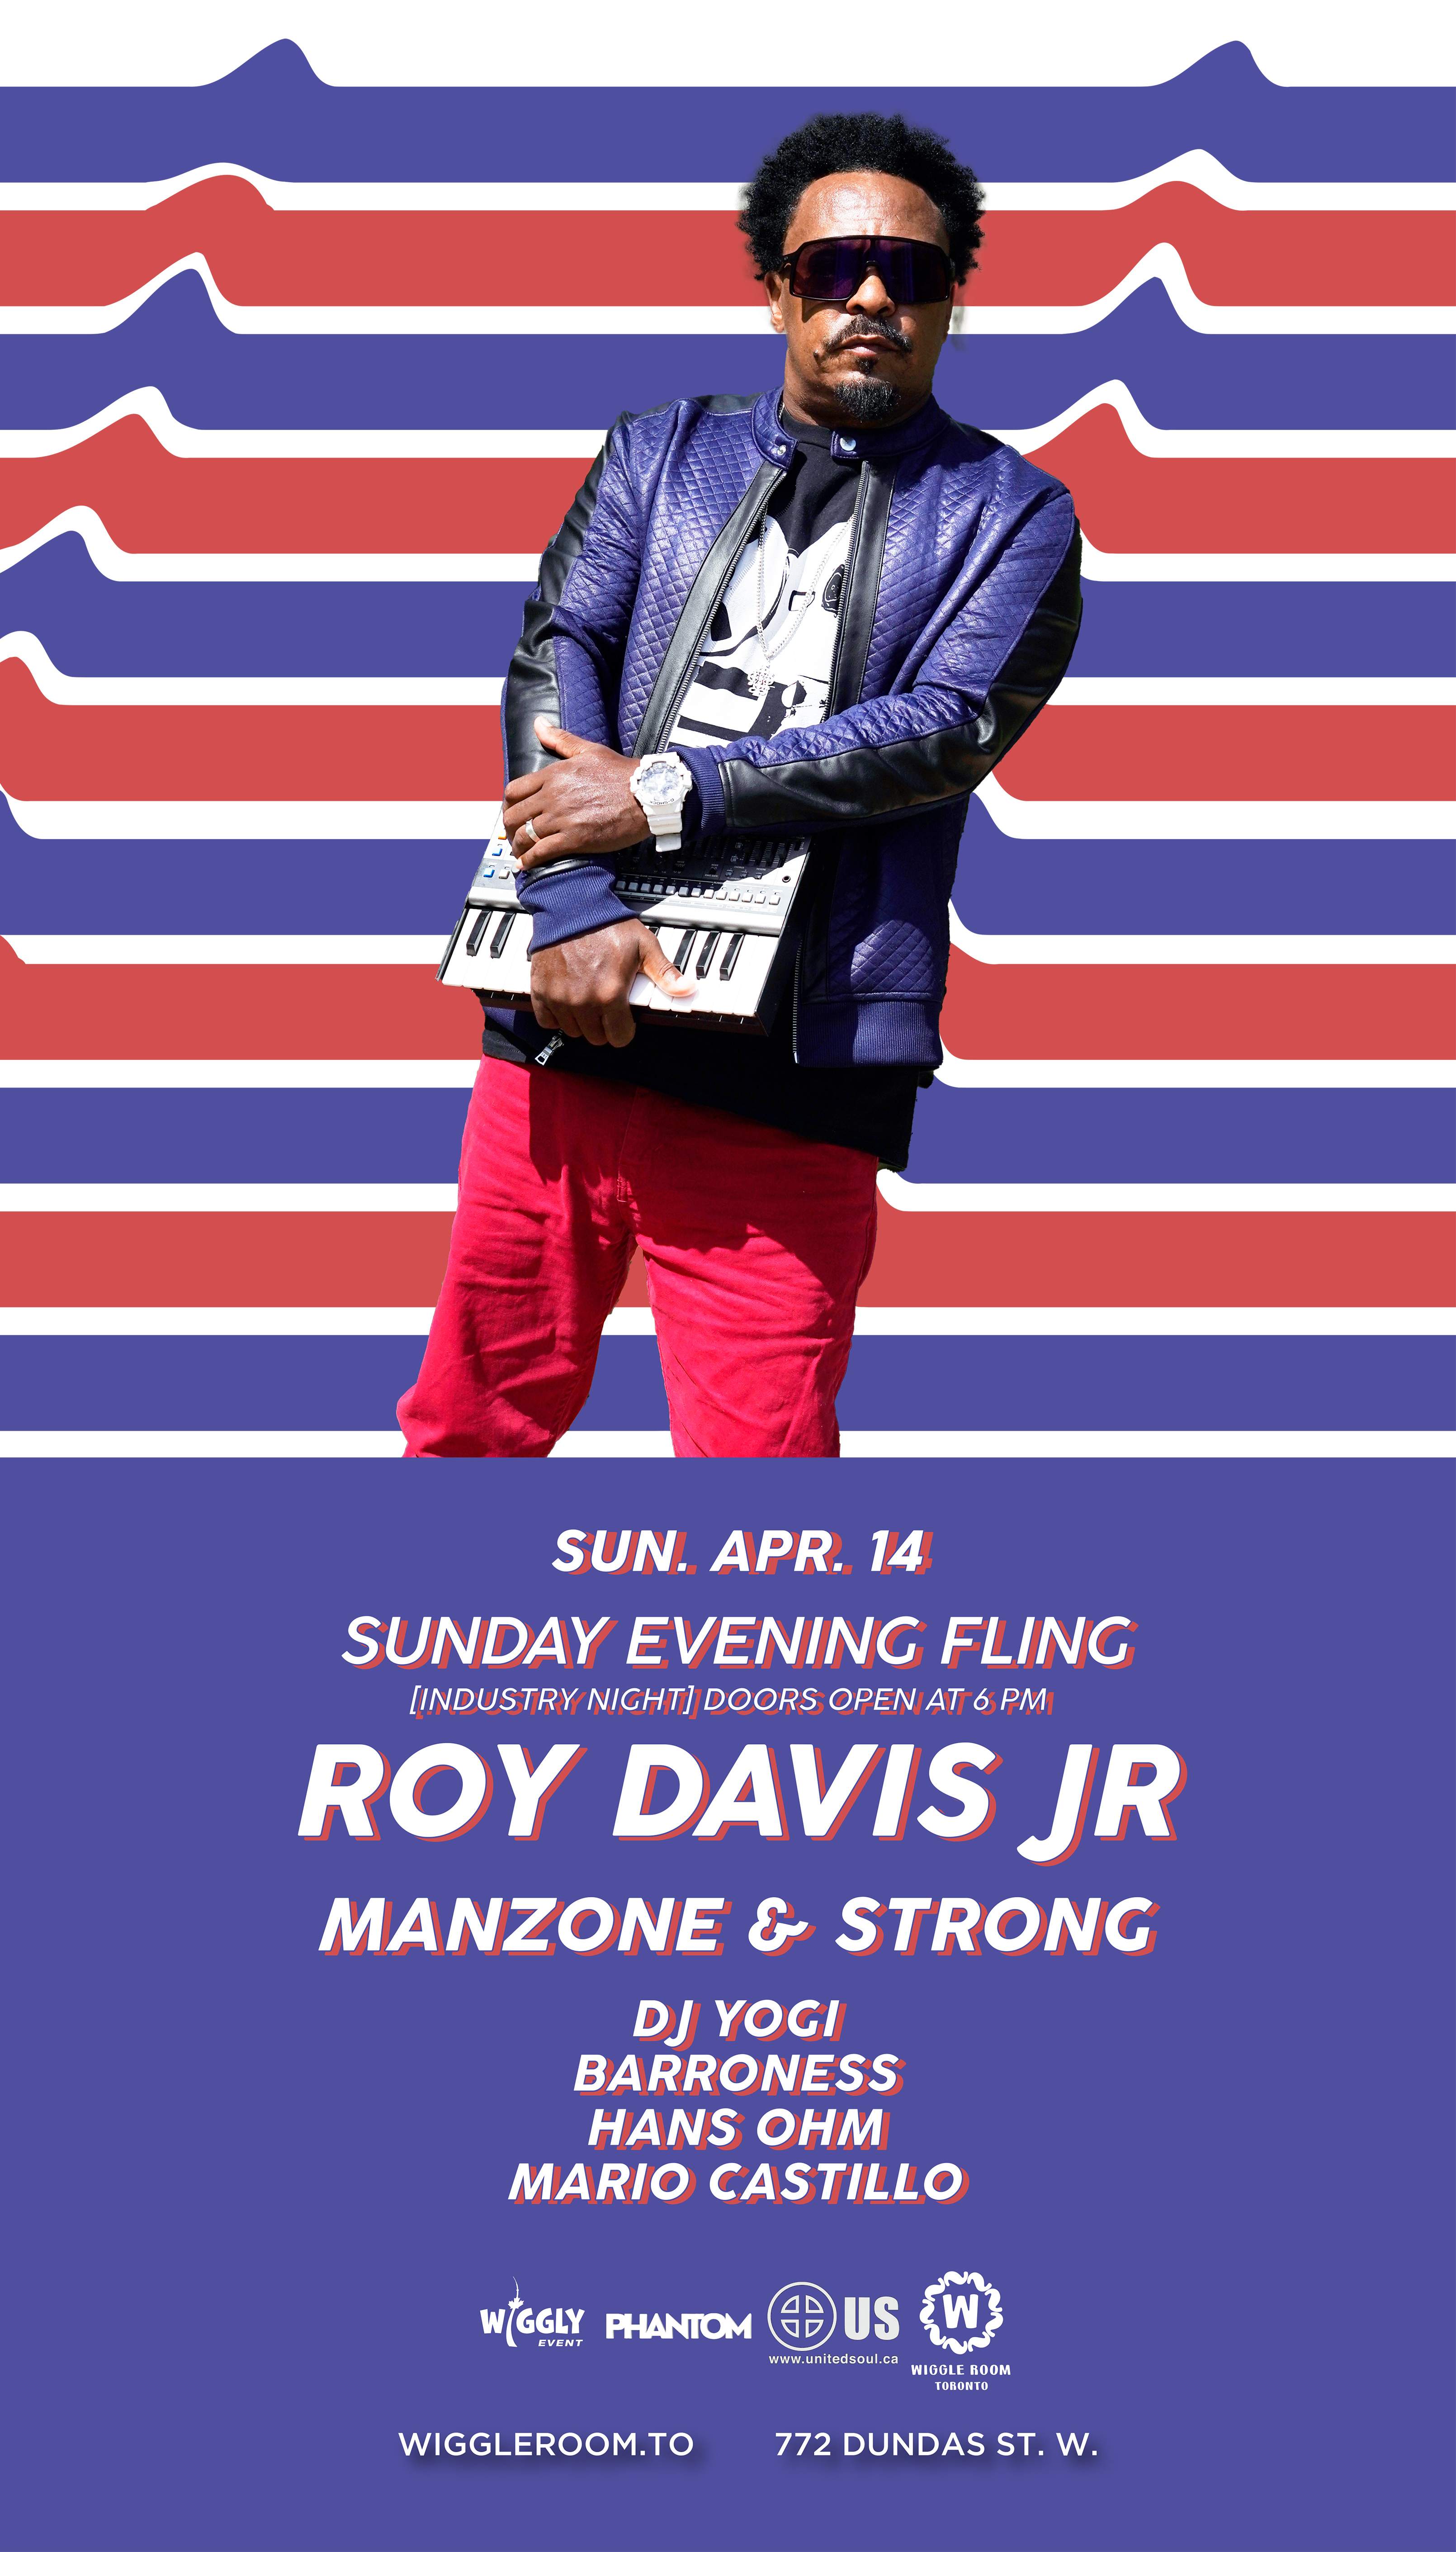 Sunday Evening Fling: Roy Davis Jr - Manzone & Strong - INDUSTRY NIGHT - Página trasera